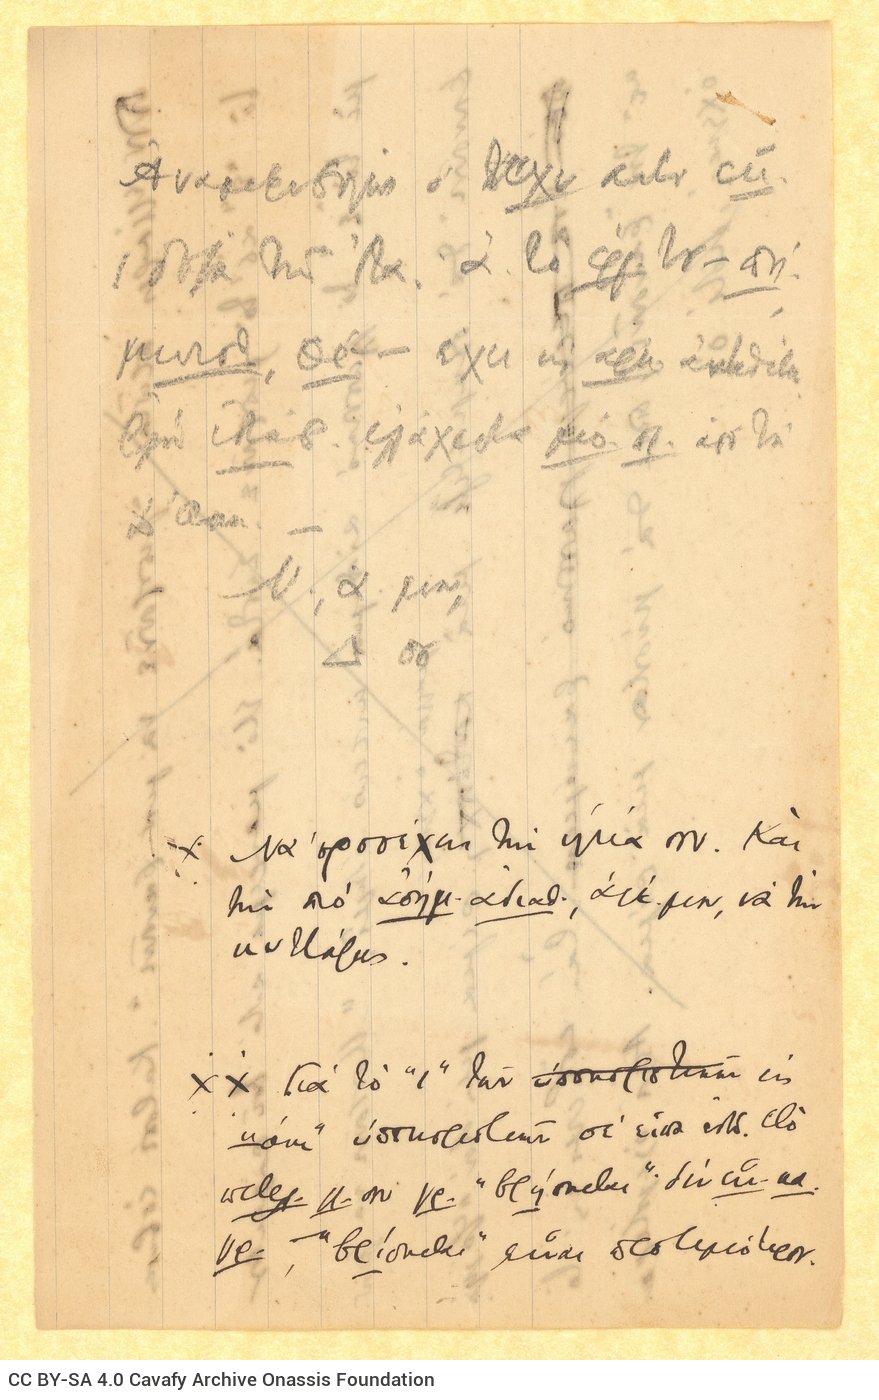 Σχέδιο επιστολής του Καβάφη προς τον Αλέκο [Σεγκόπουλο] σε δύο φύλλα 